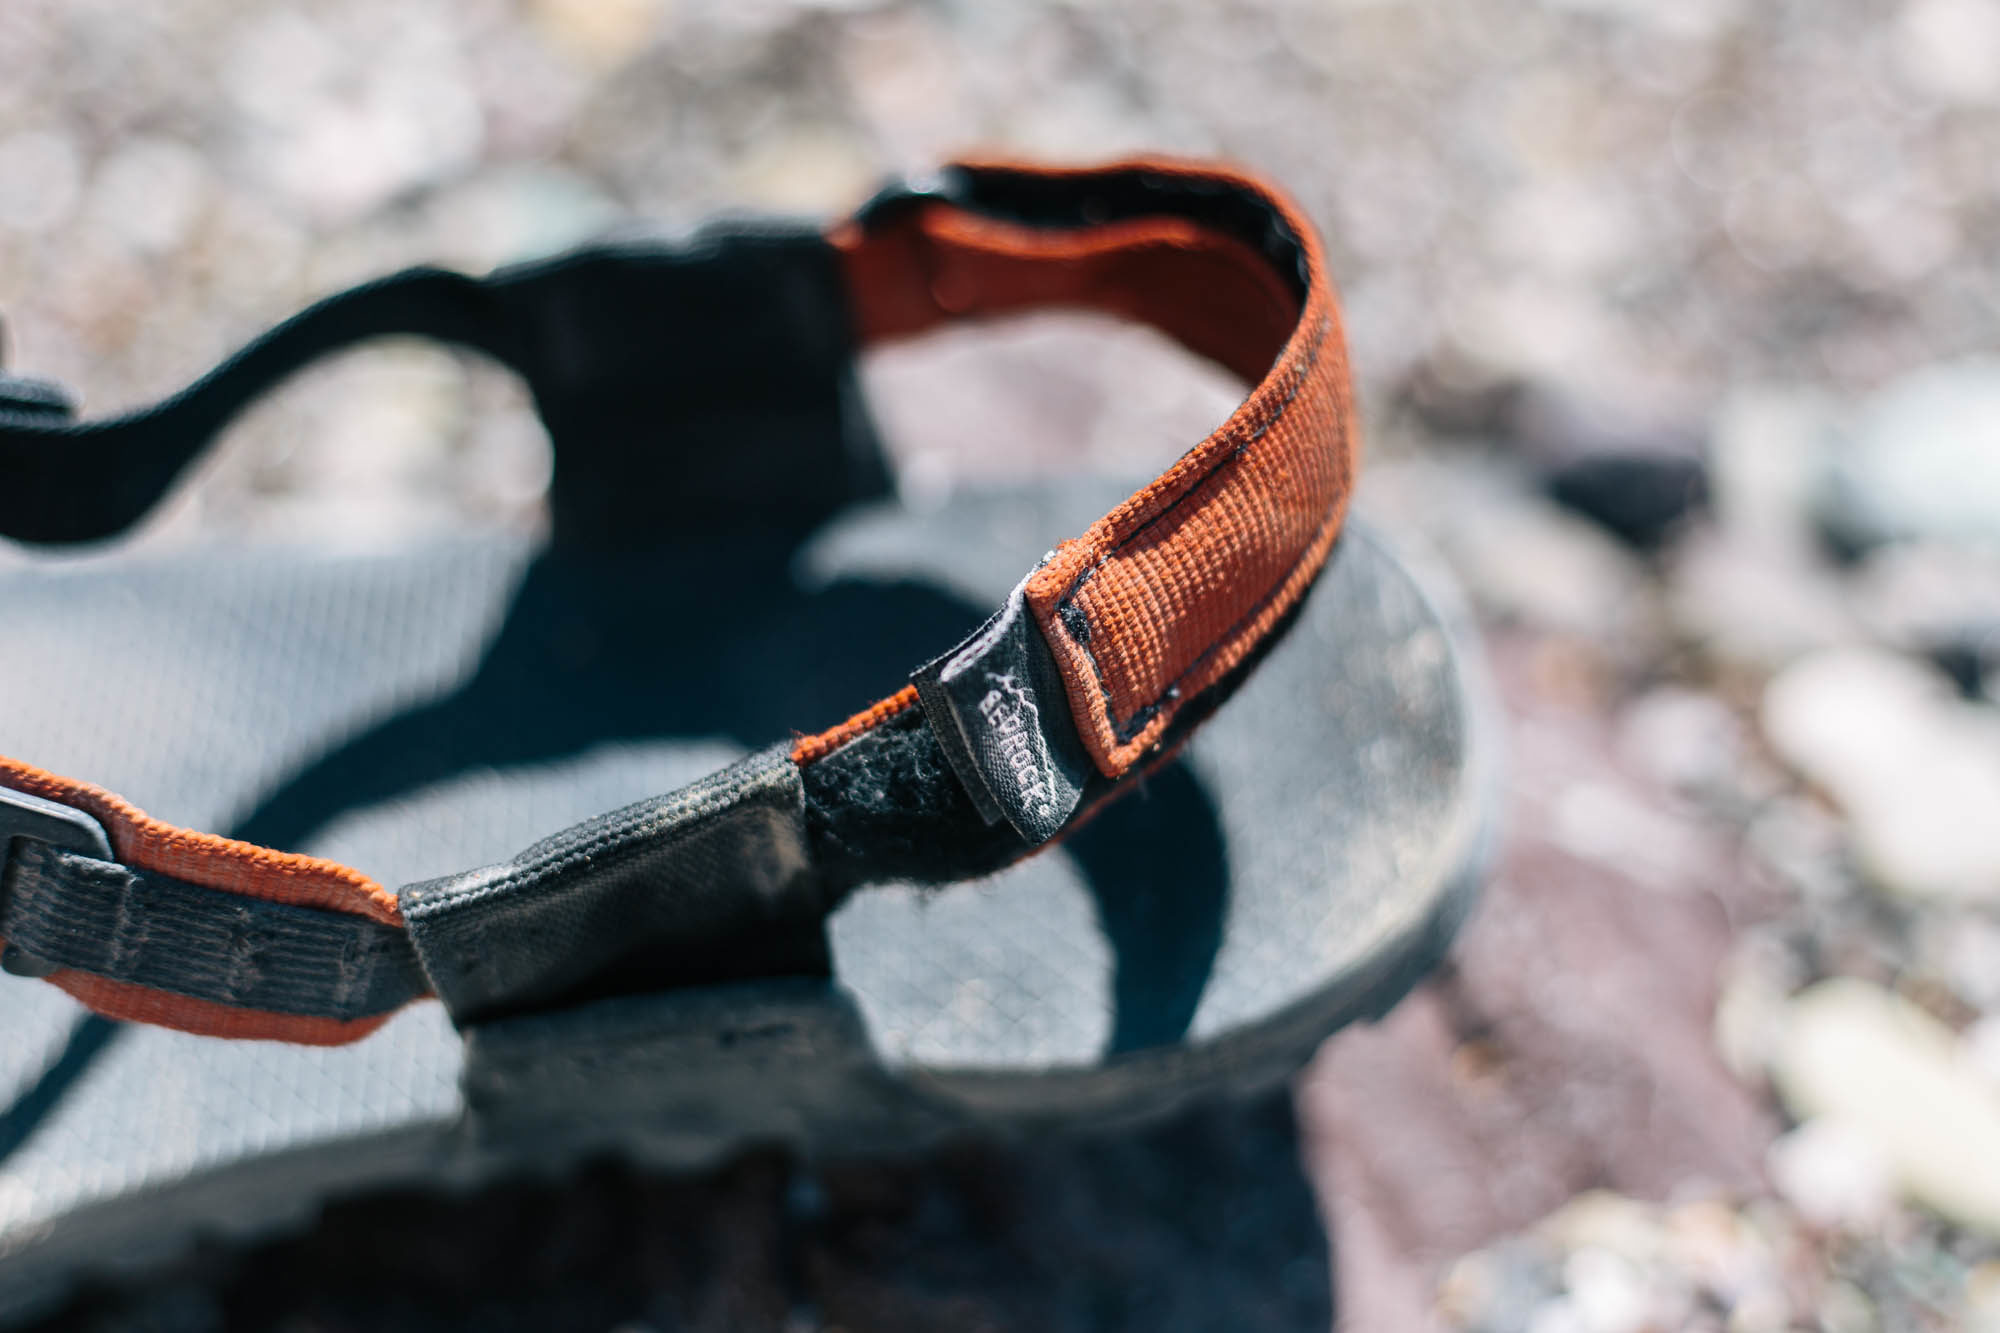 Bedrock Cairn Adventure Sandals Review